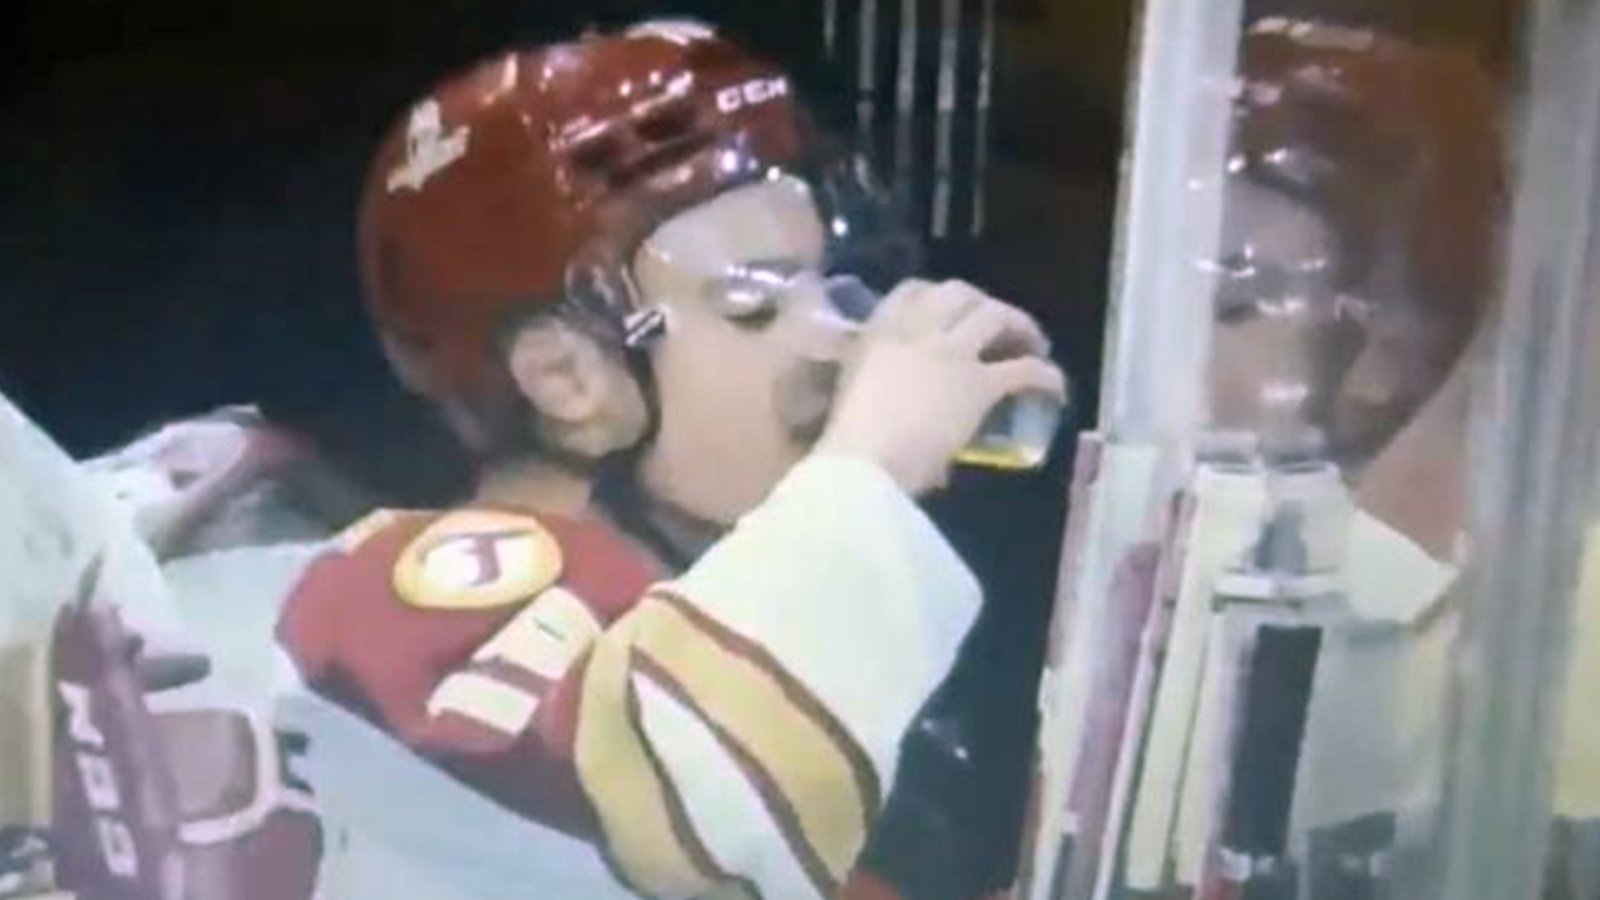 QMJHL player chugs a fan's beer after triple-OT winner